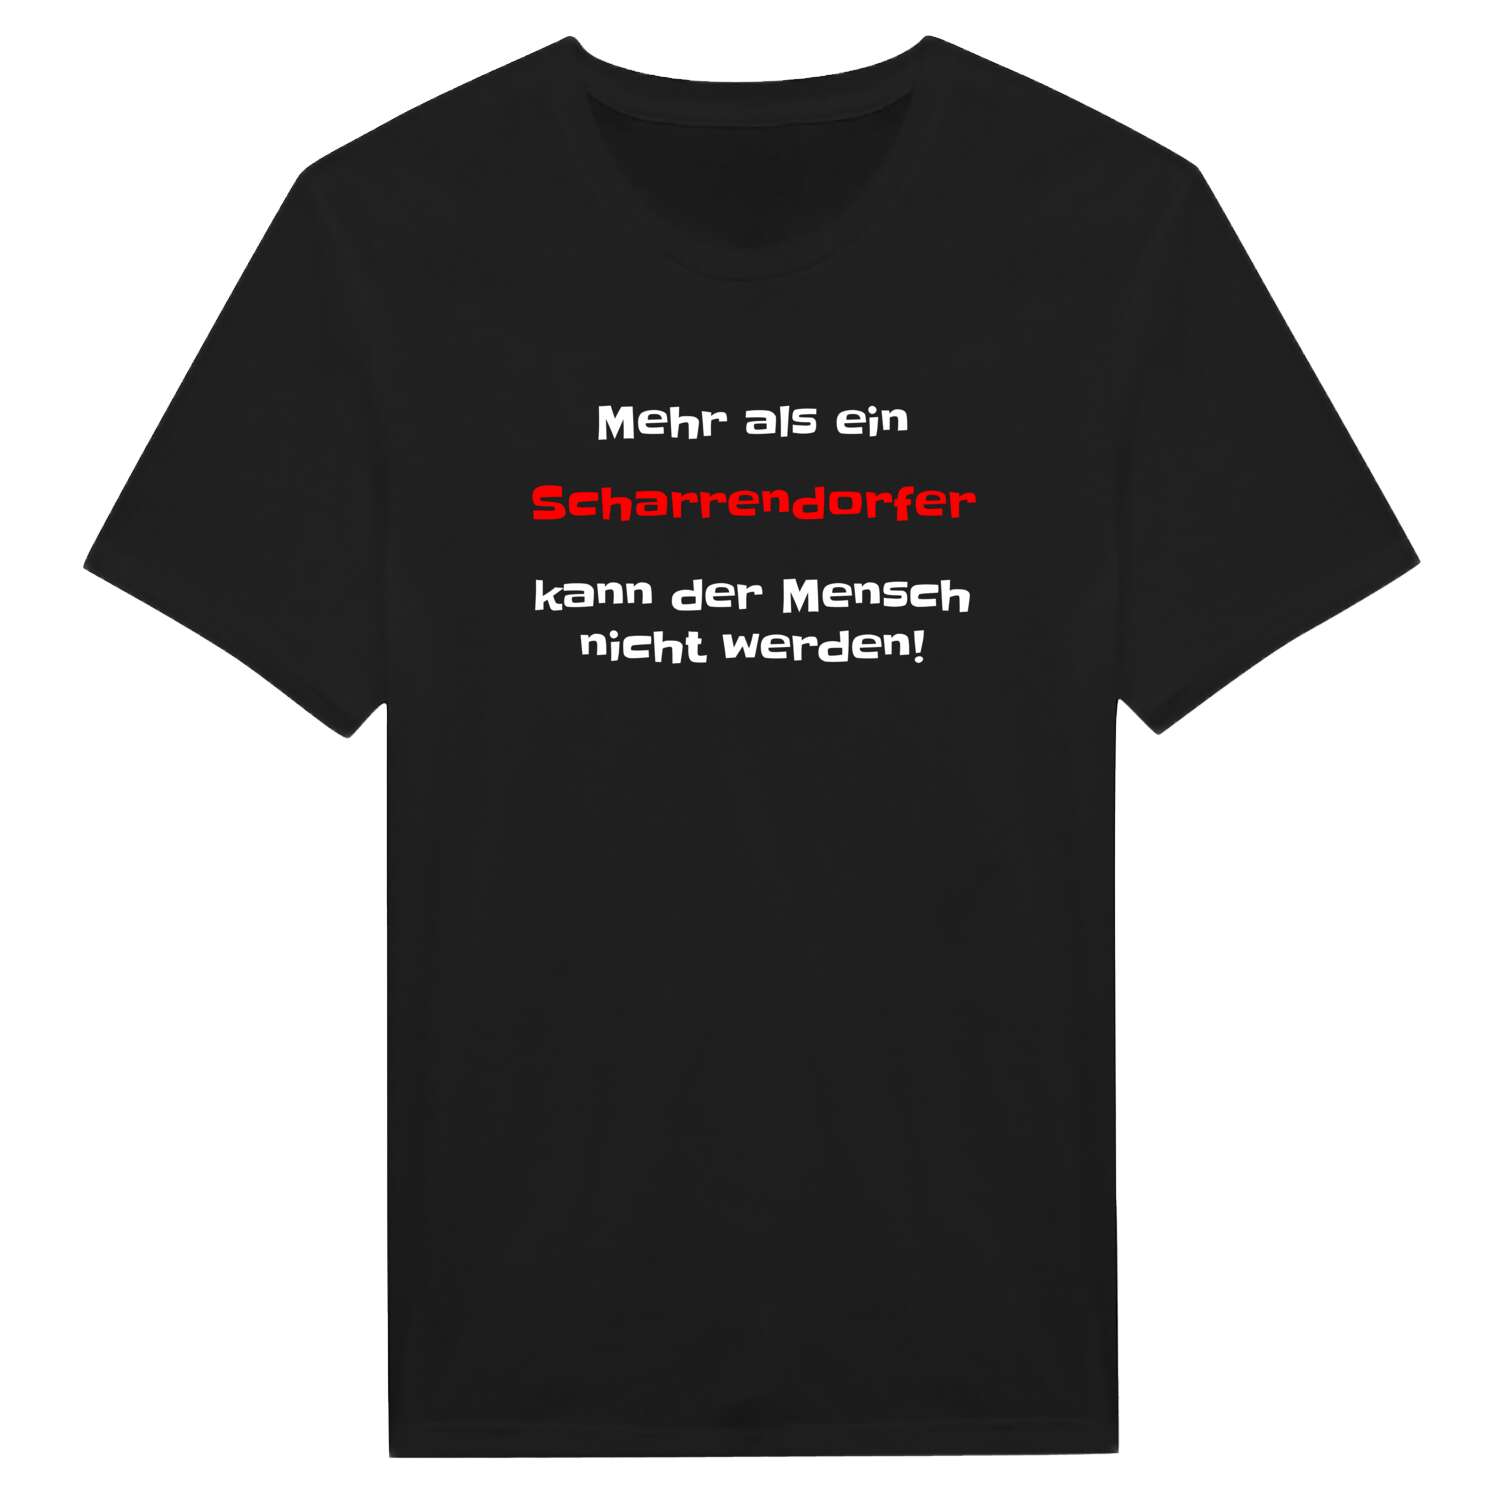 Scharrendorf T-Shirt »Mehr als ein«